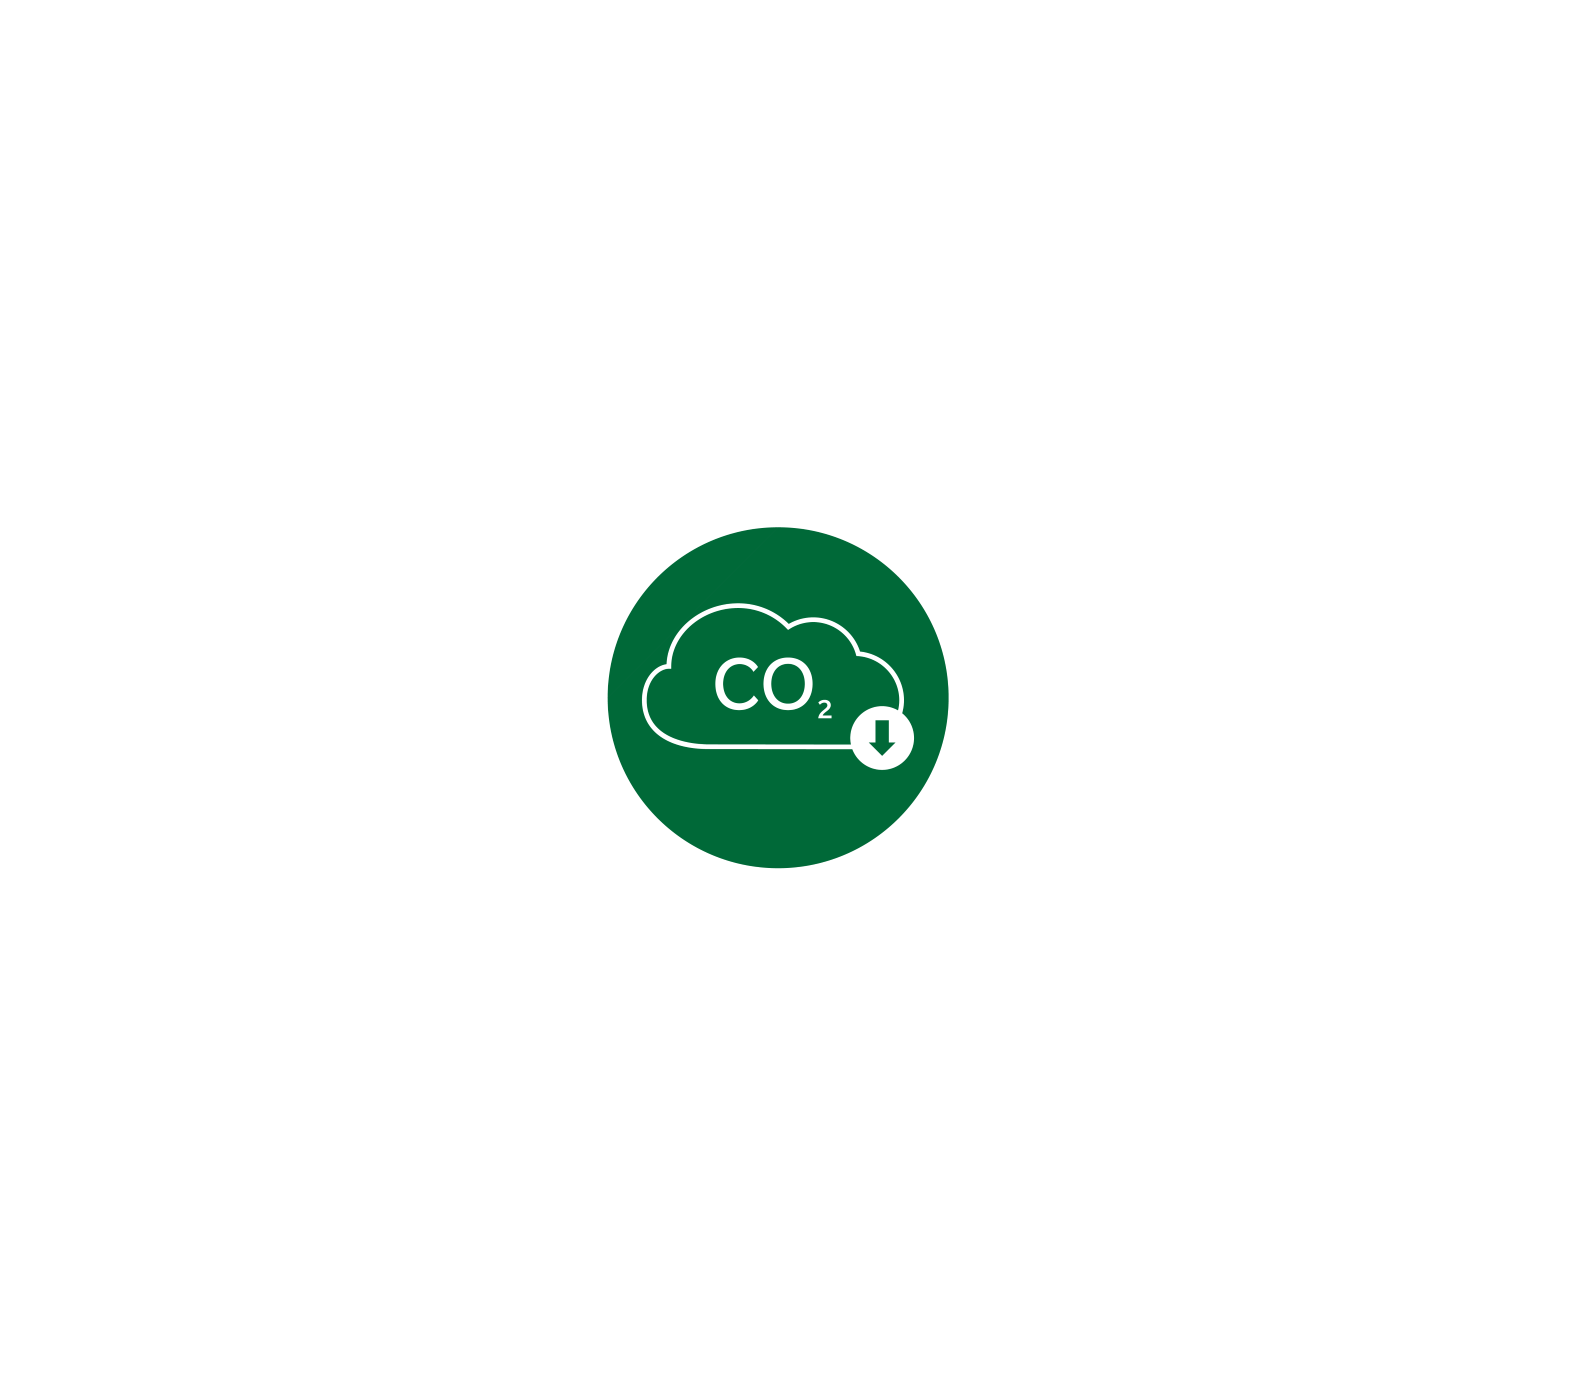 émission de carbone